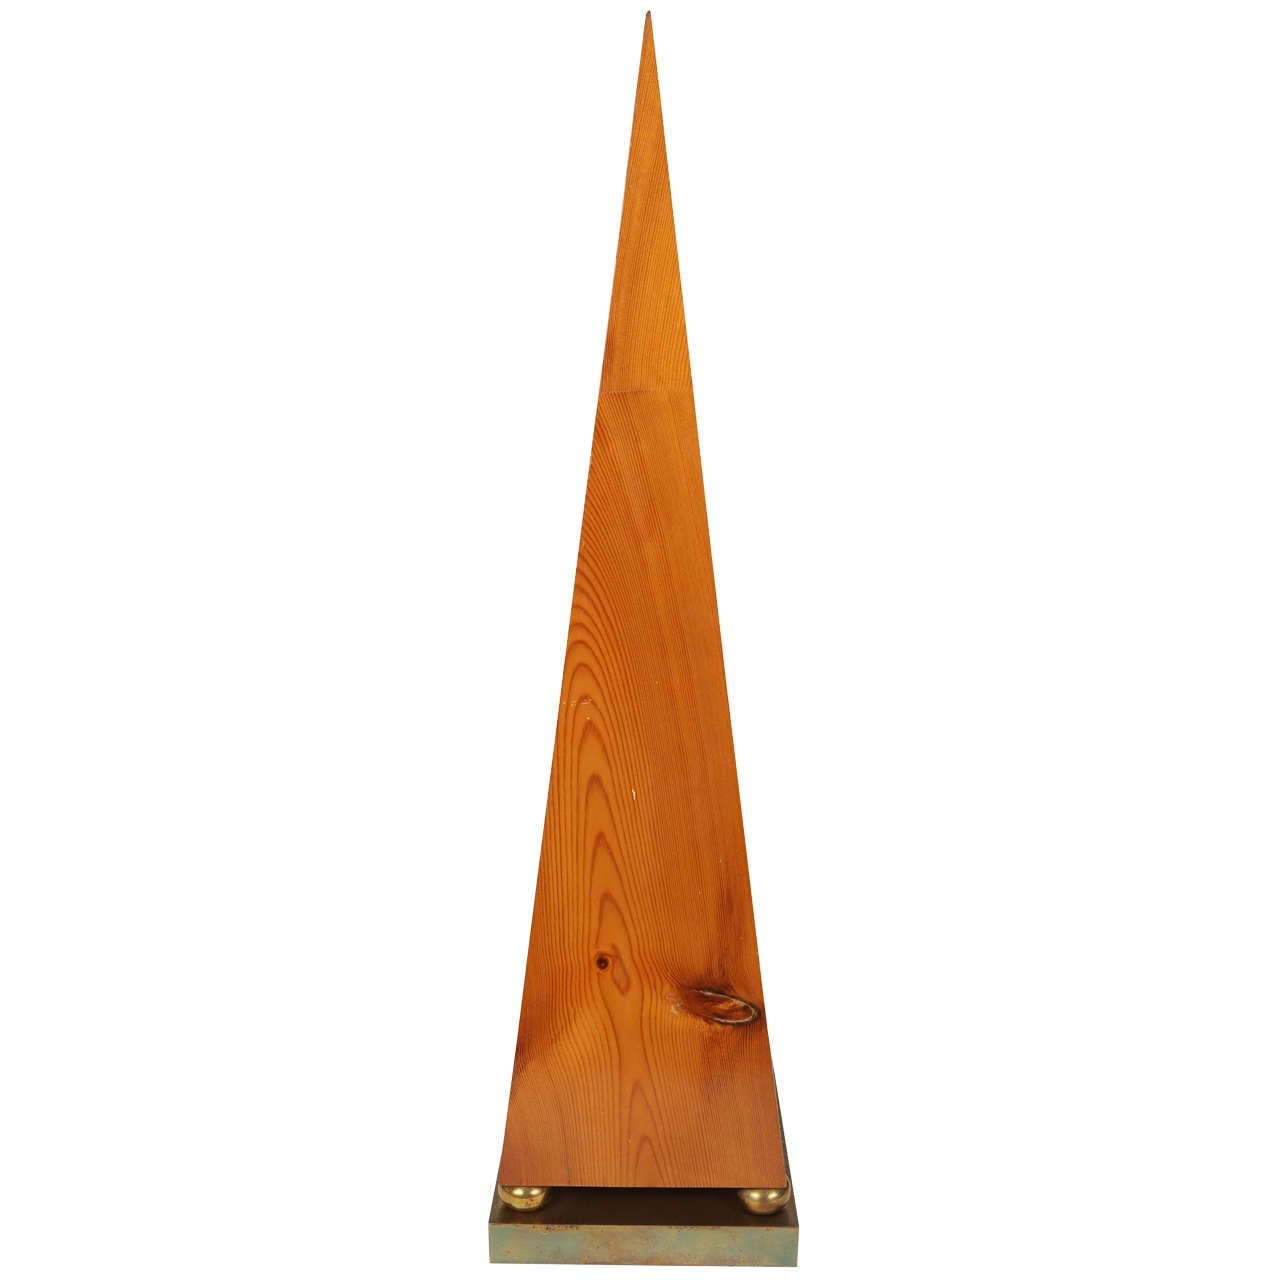 Knotted Pine Obelisk For Sale at 1stdibs